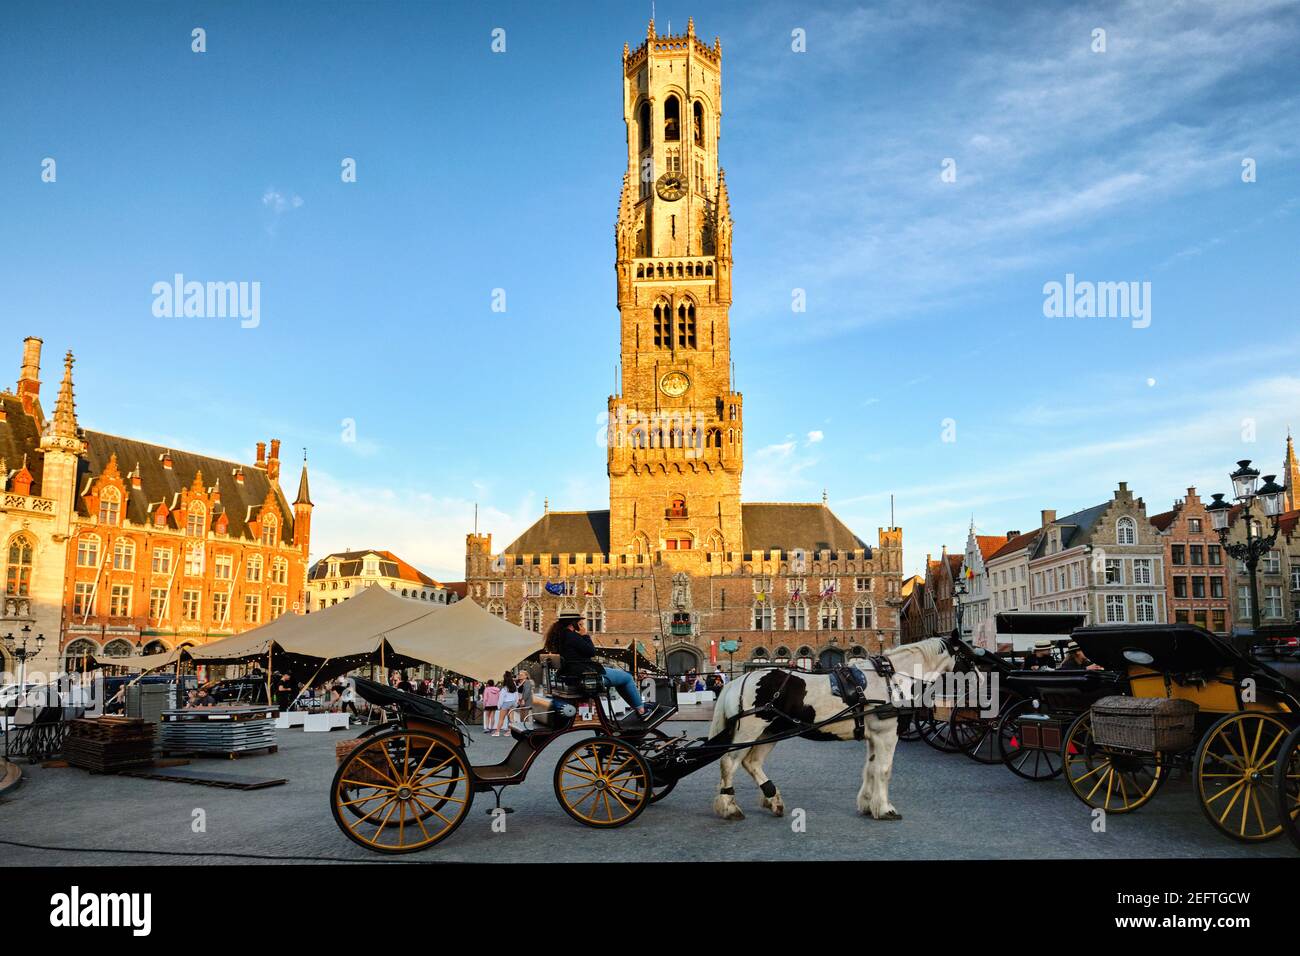 Plaza Principal de Brujas con Carrieges tirados por caballos, Flandes, Bélgica Foto de stock